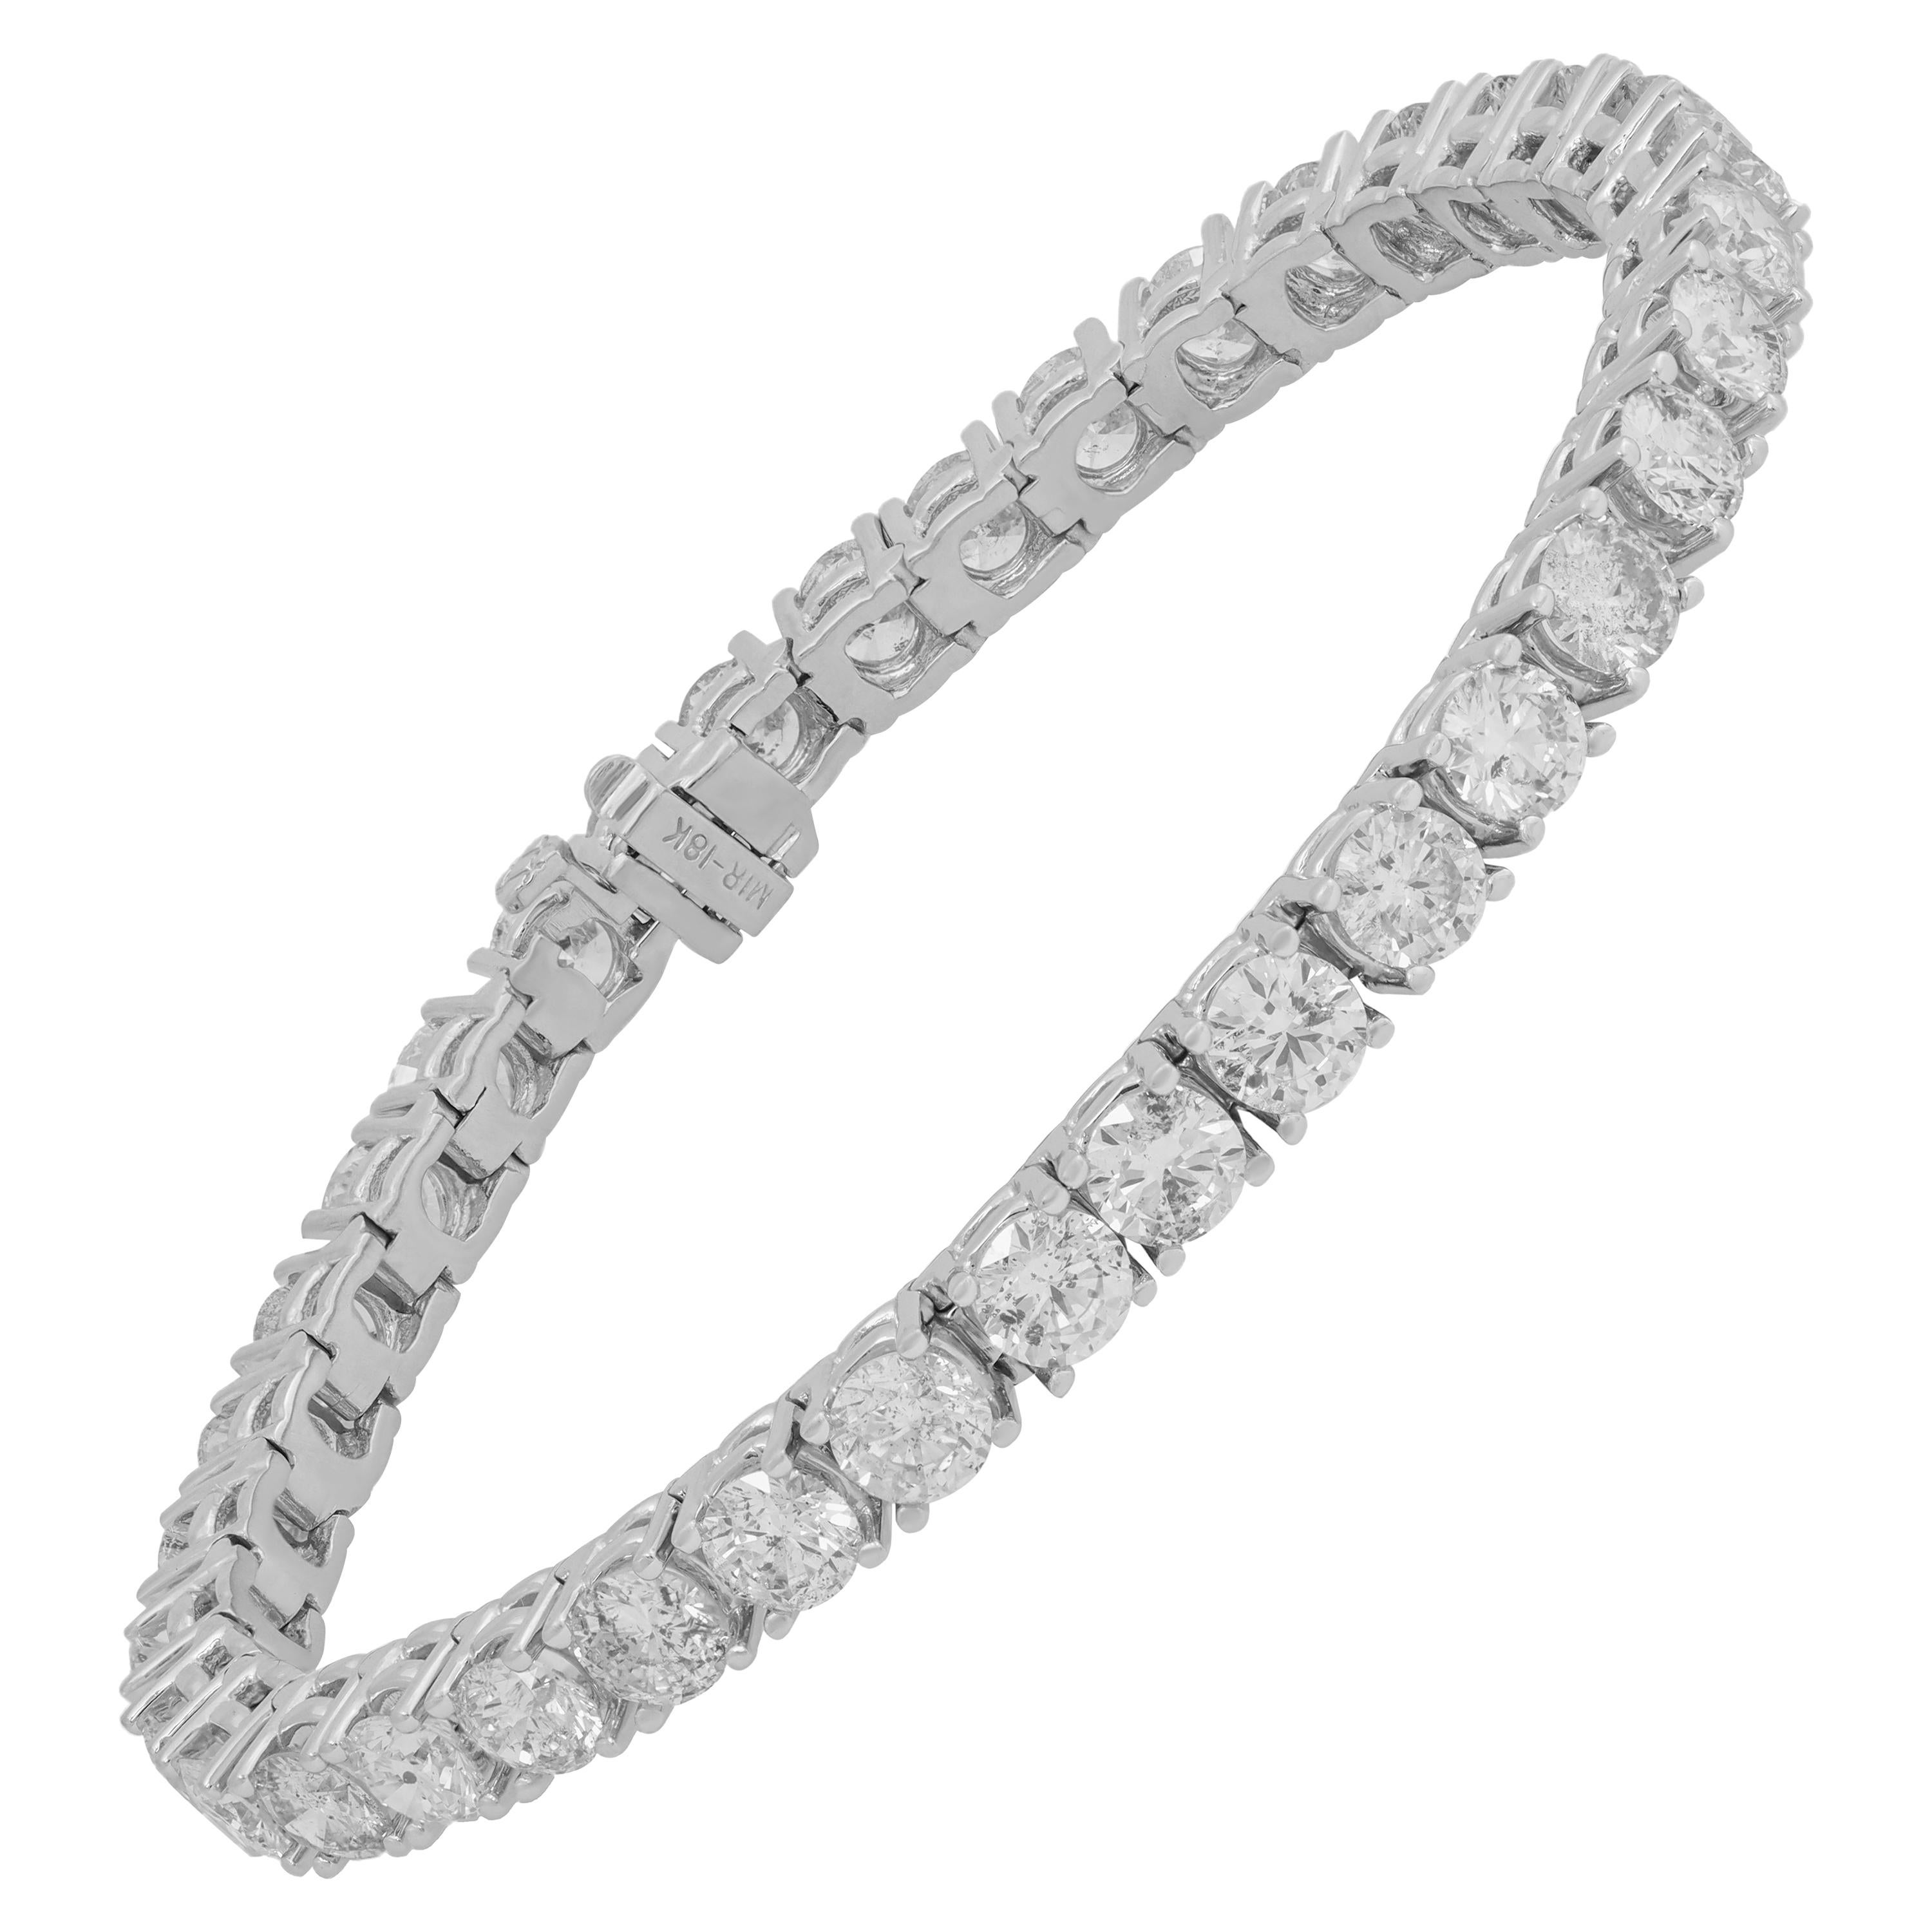 IGI Certified 14.60 Carat Diamond Tennis Bracelet For Sale